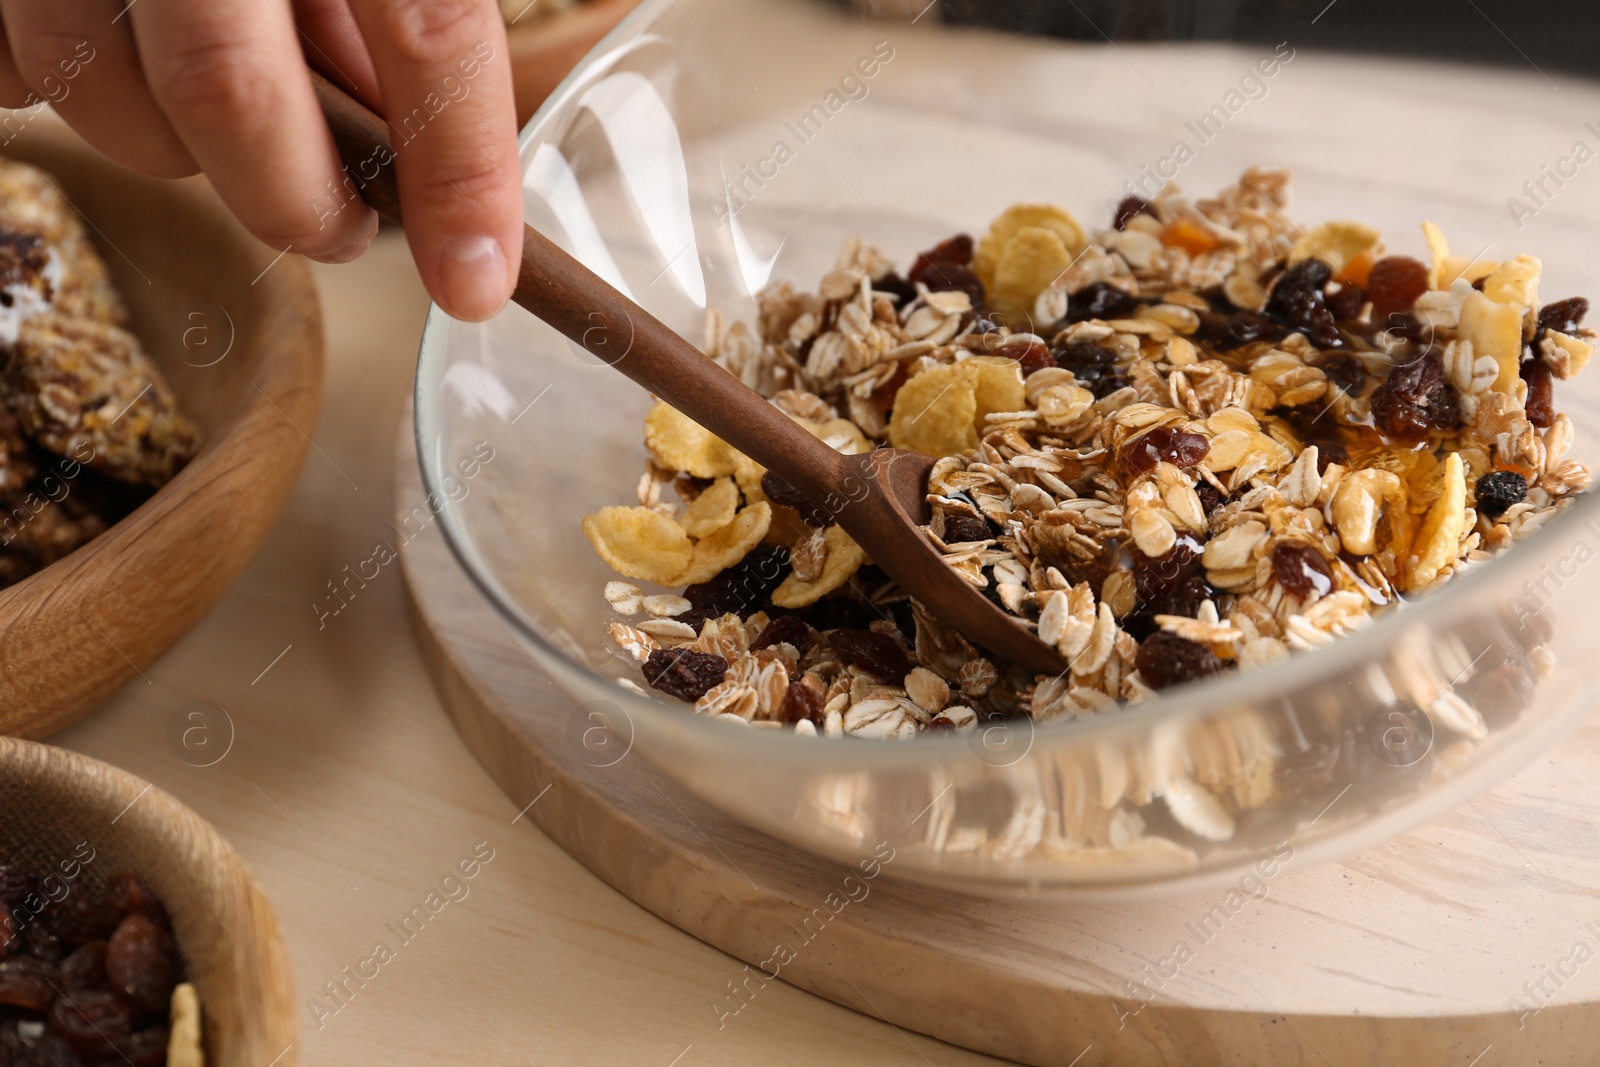 Photo of Woman preparing healthy granola bar at wooden table, closeup